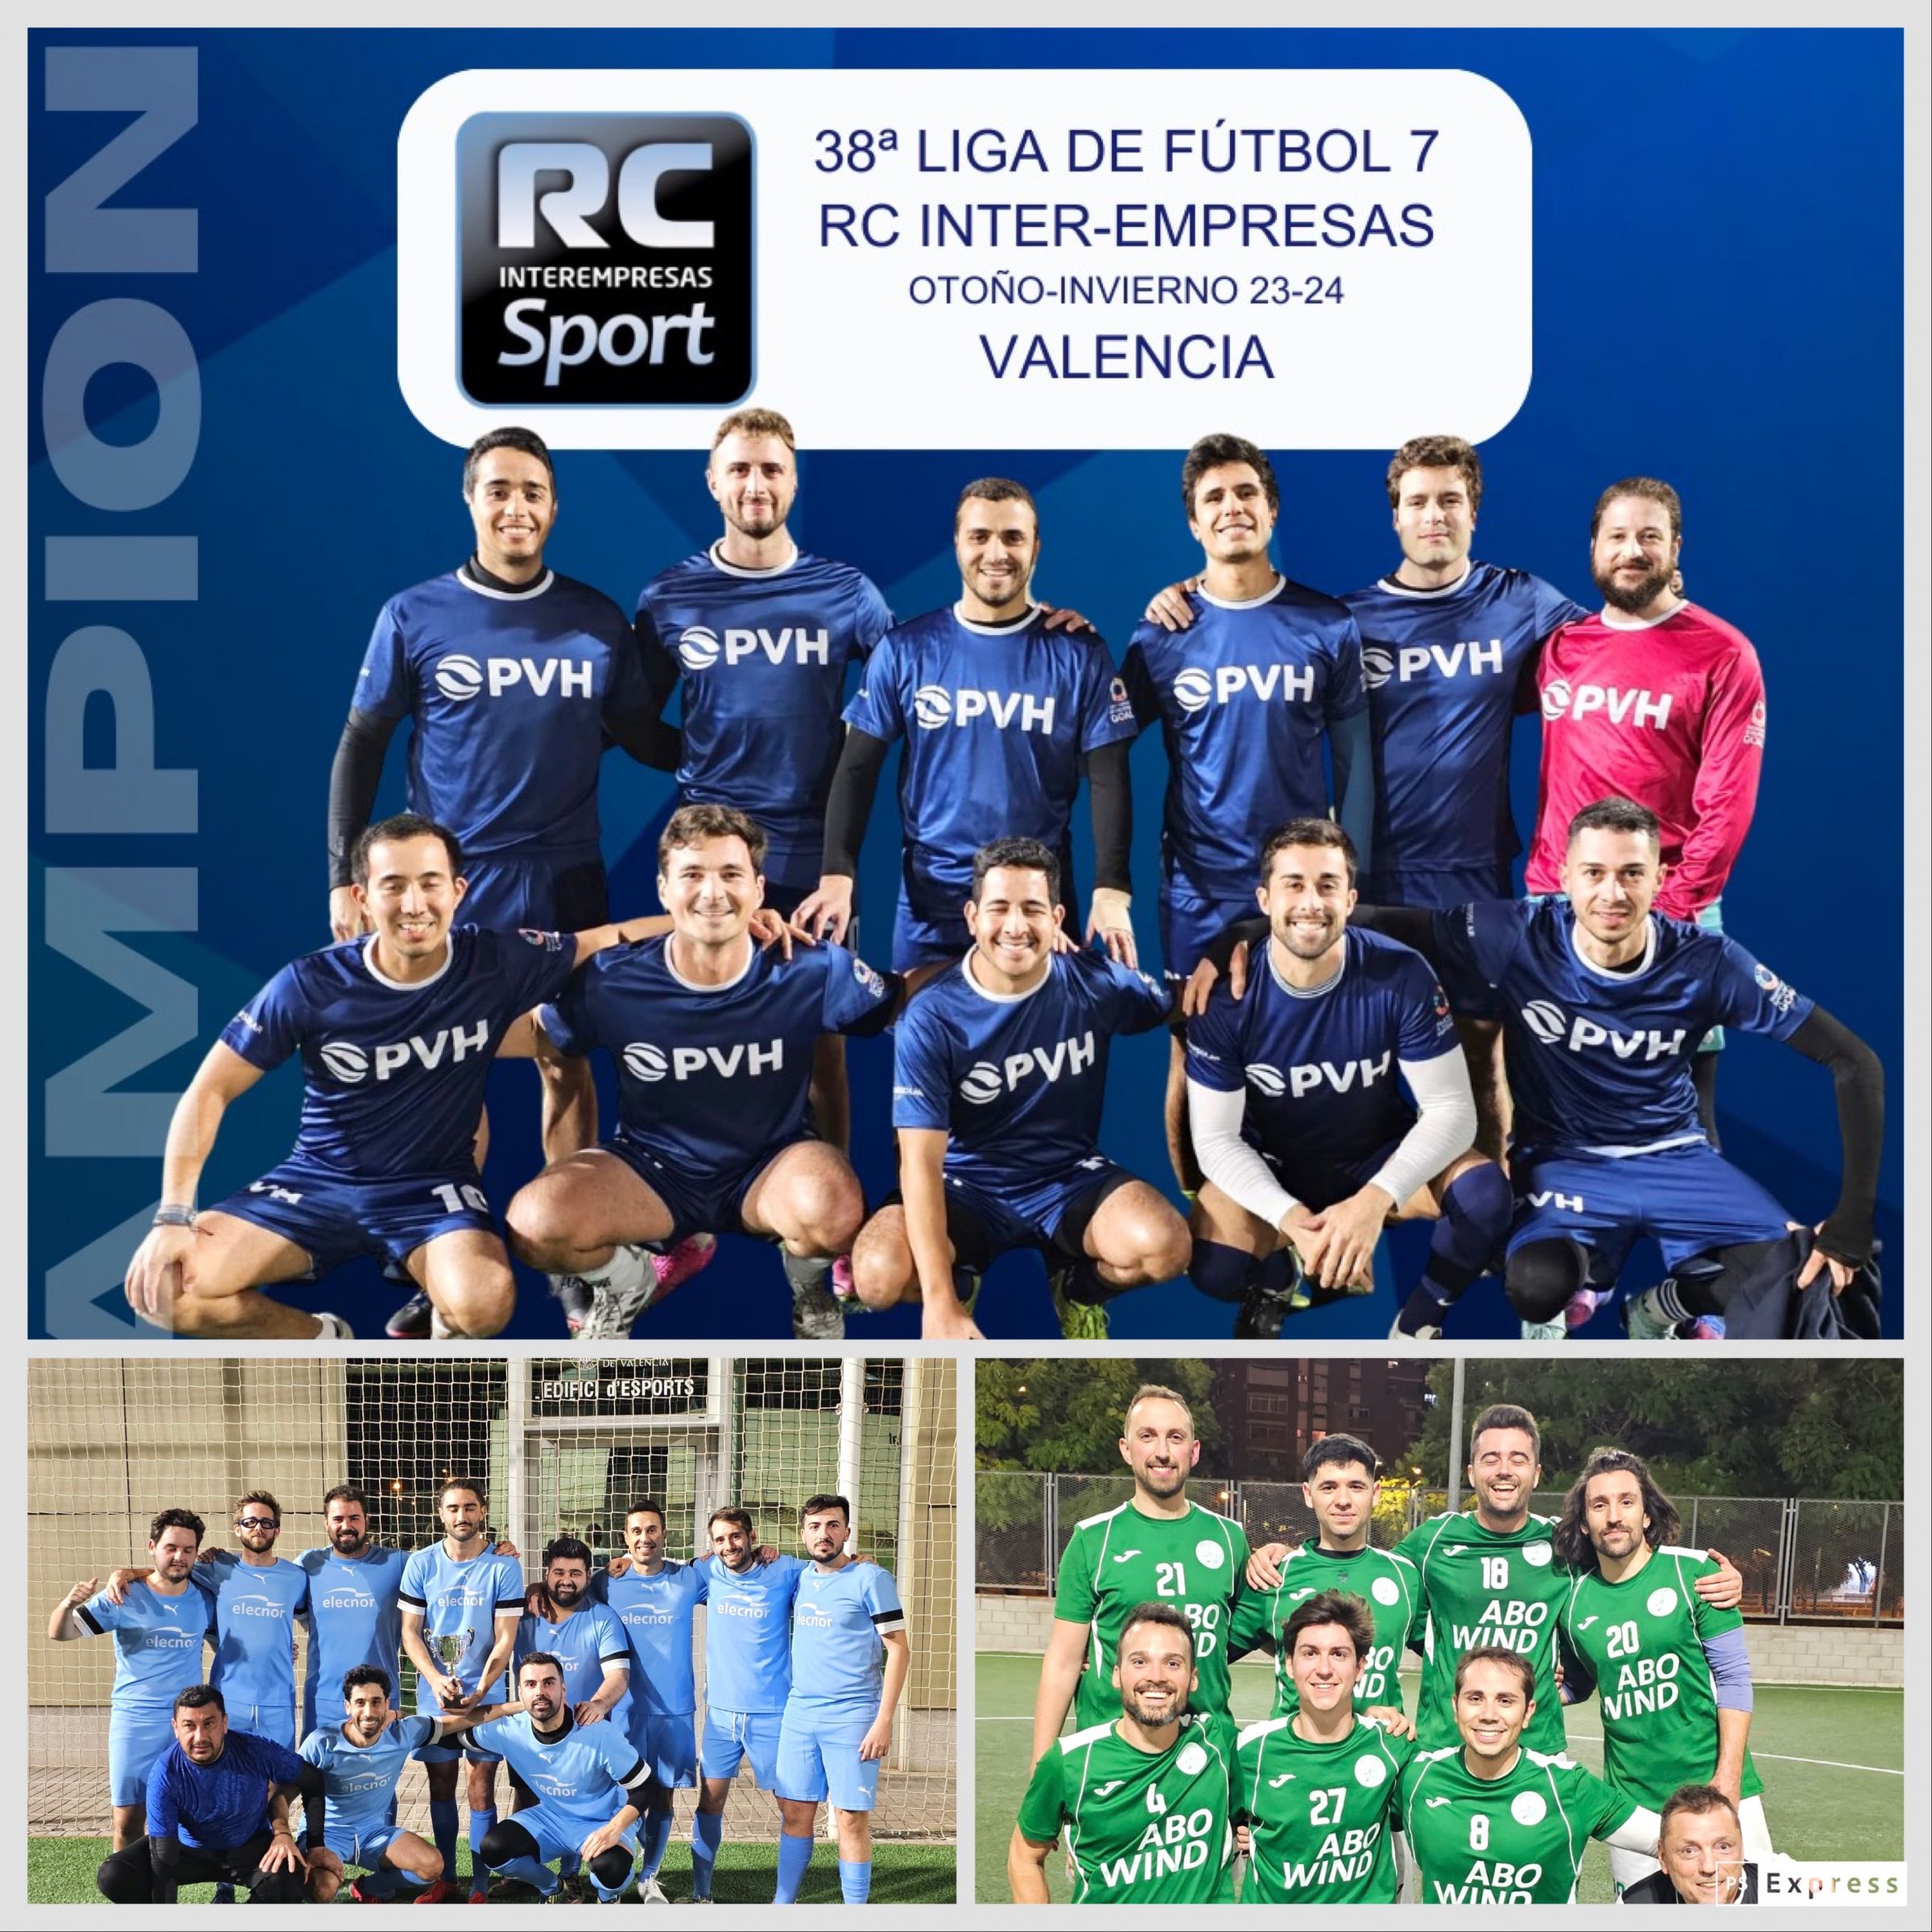 PVH en los penaltis se impone a ELECNOR y consigue el título de la 38ª Liga de Futbol 7 RC Inter-empresas de Otoño-Invierno 23-24 en Valencia